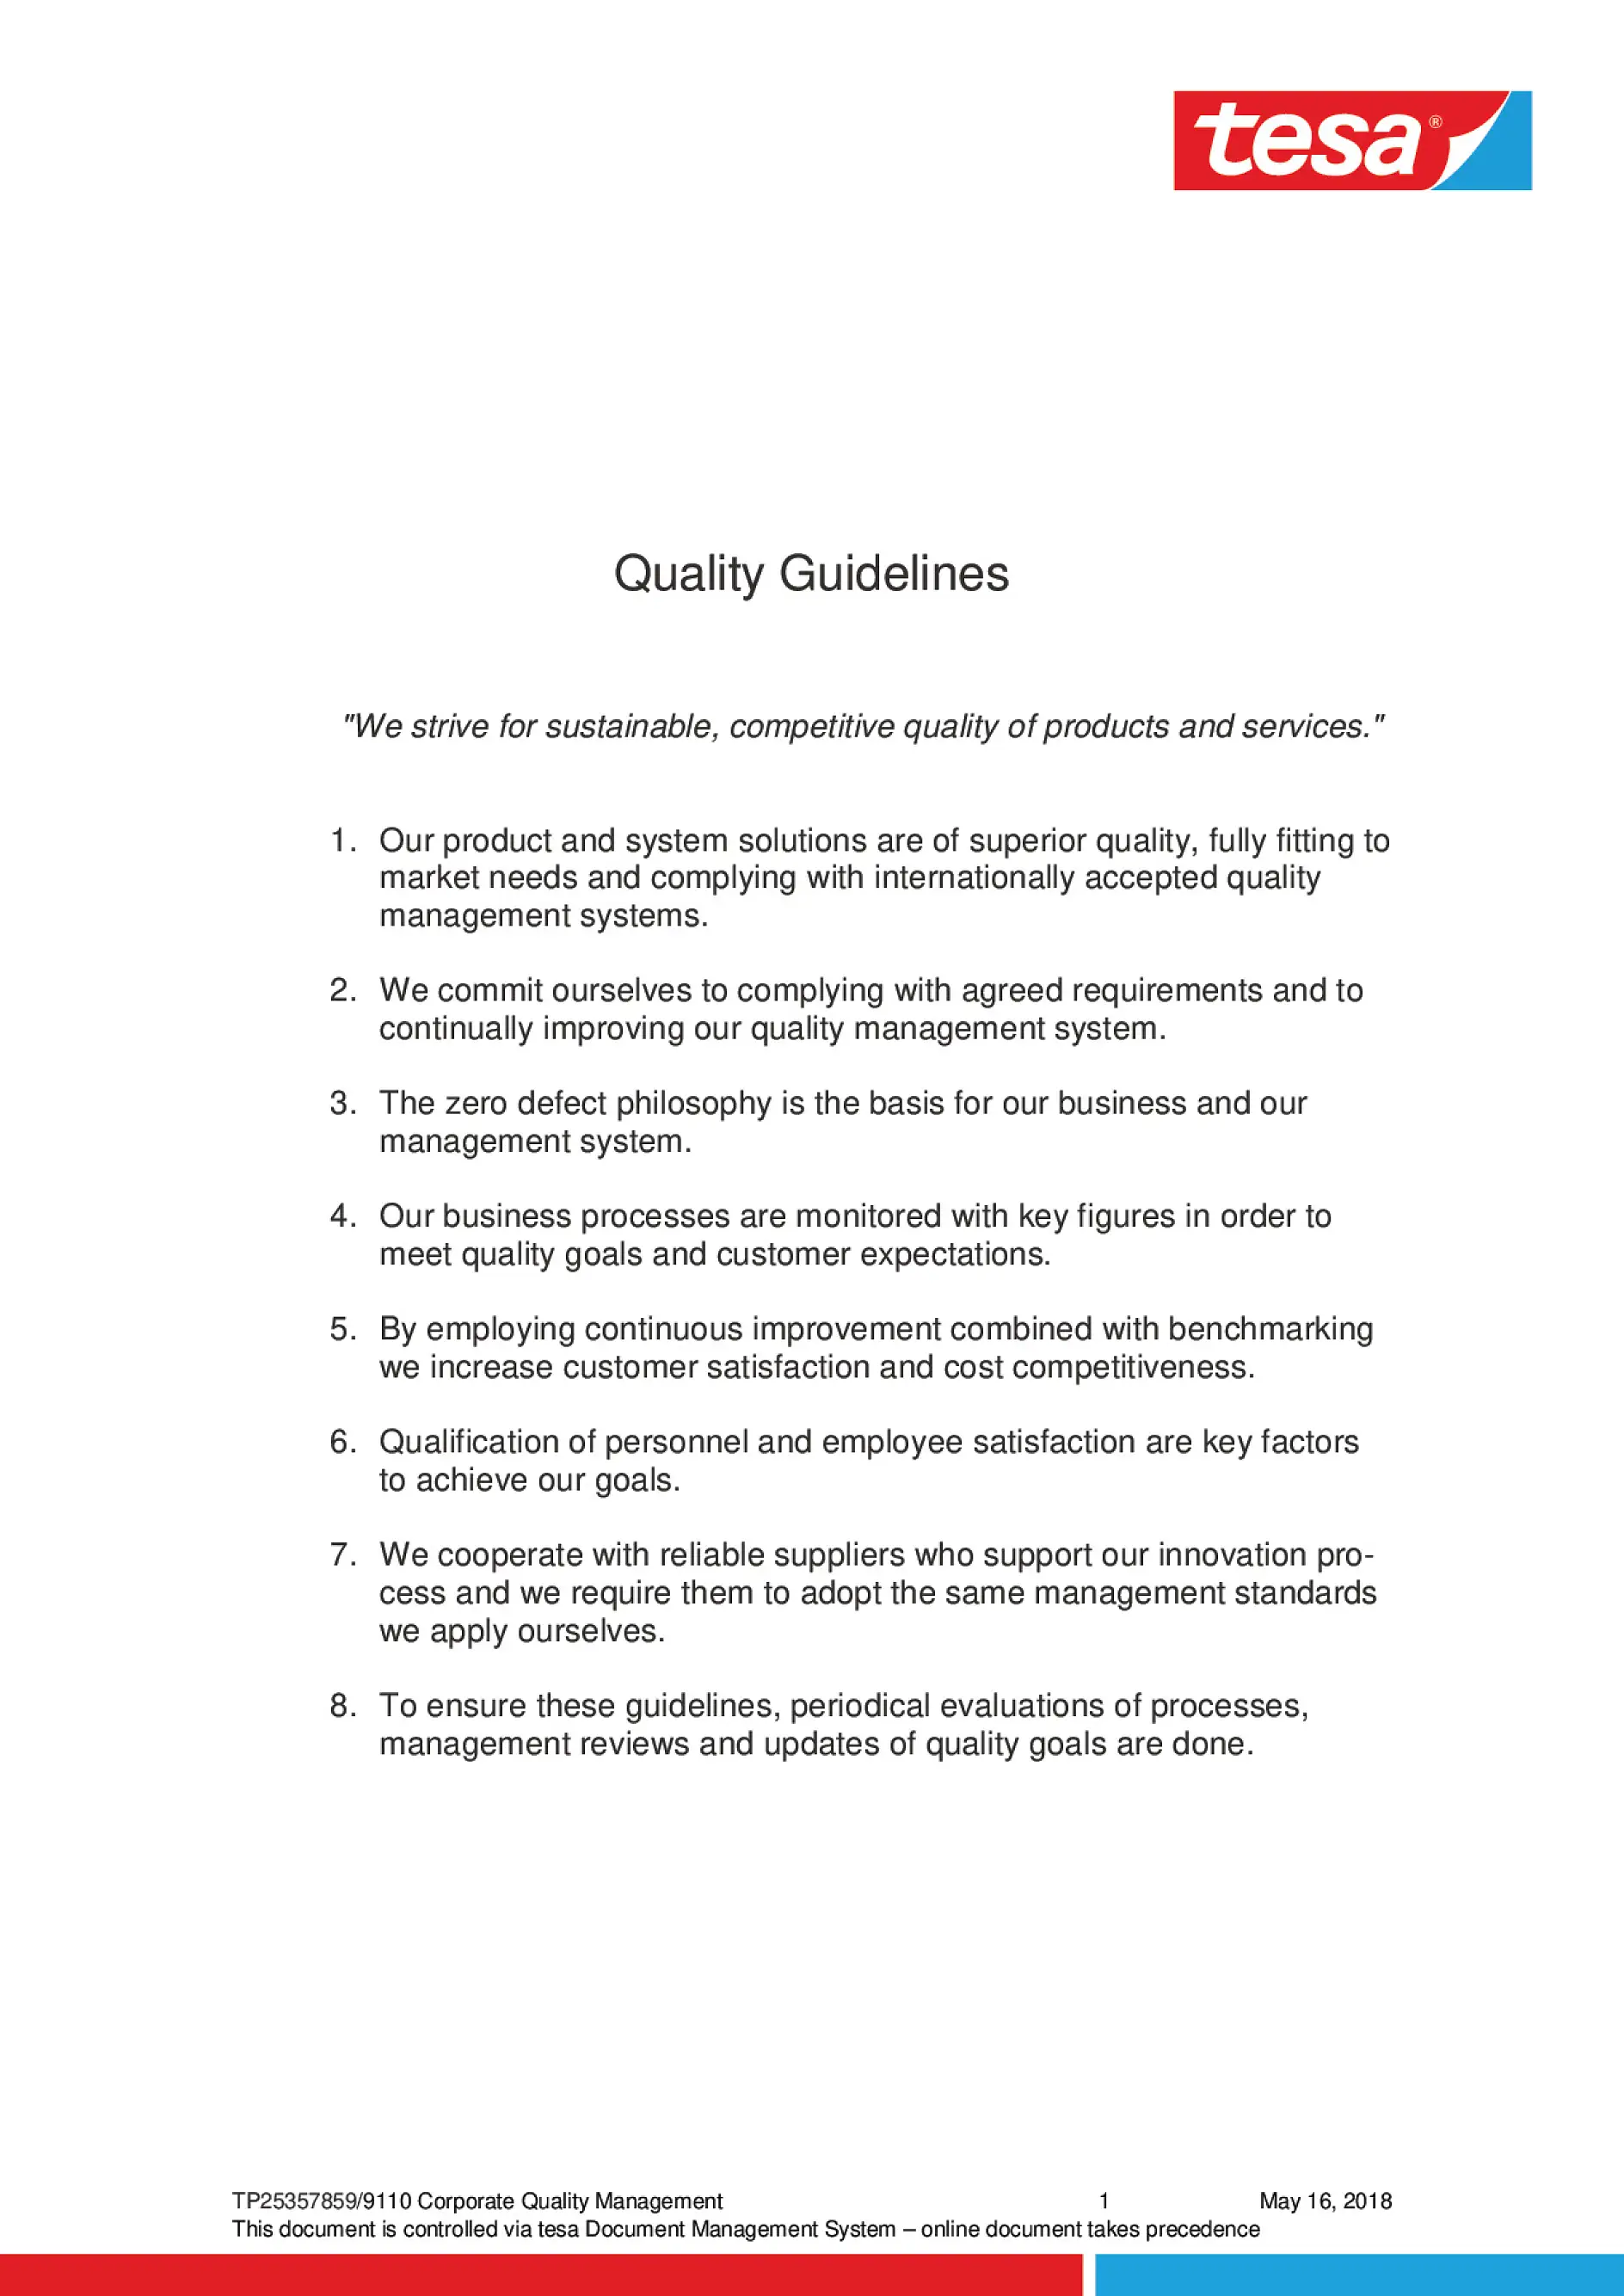 nguyên tắc về chất lượng (1)